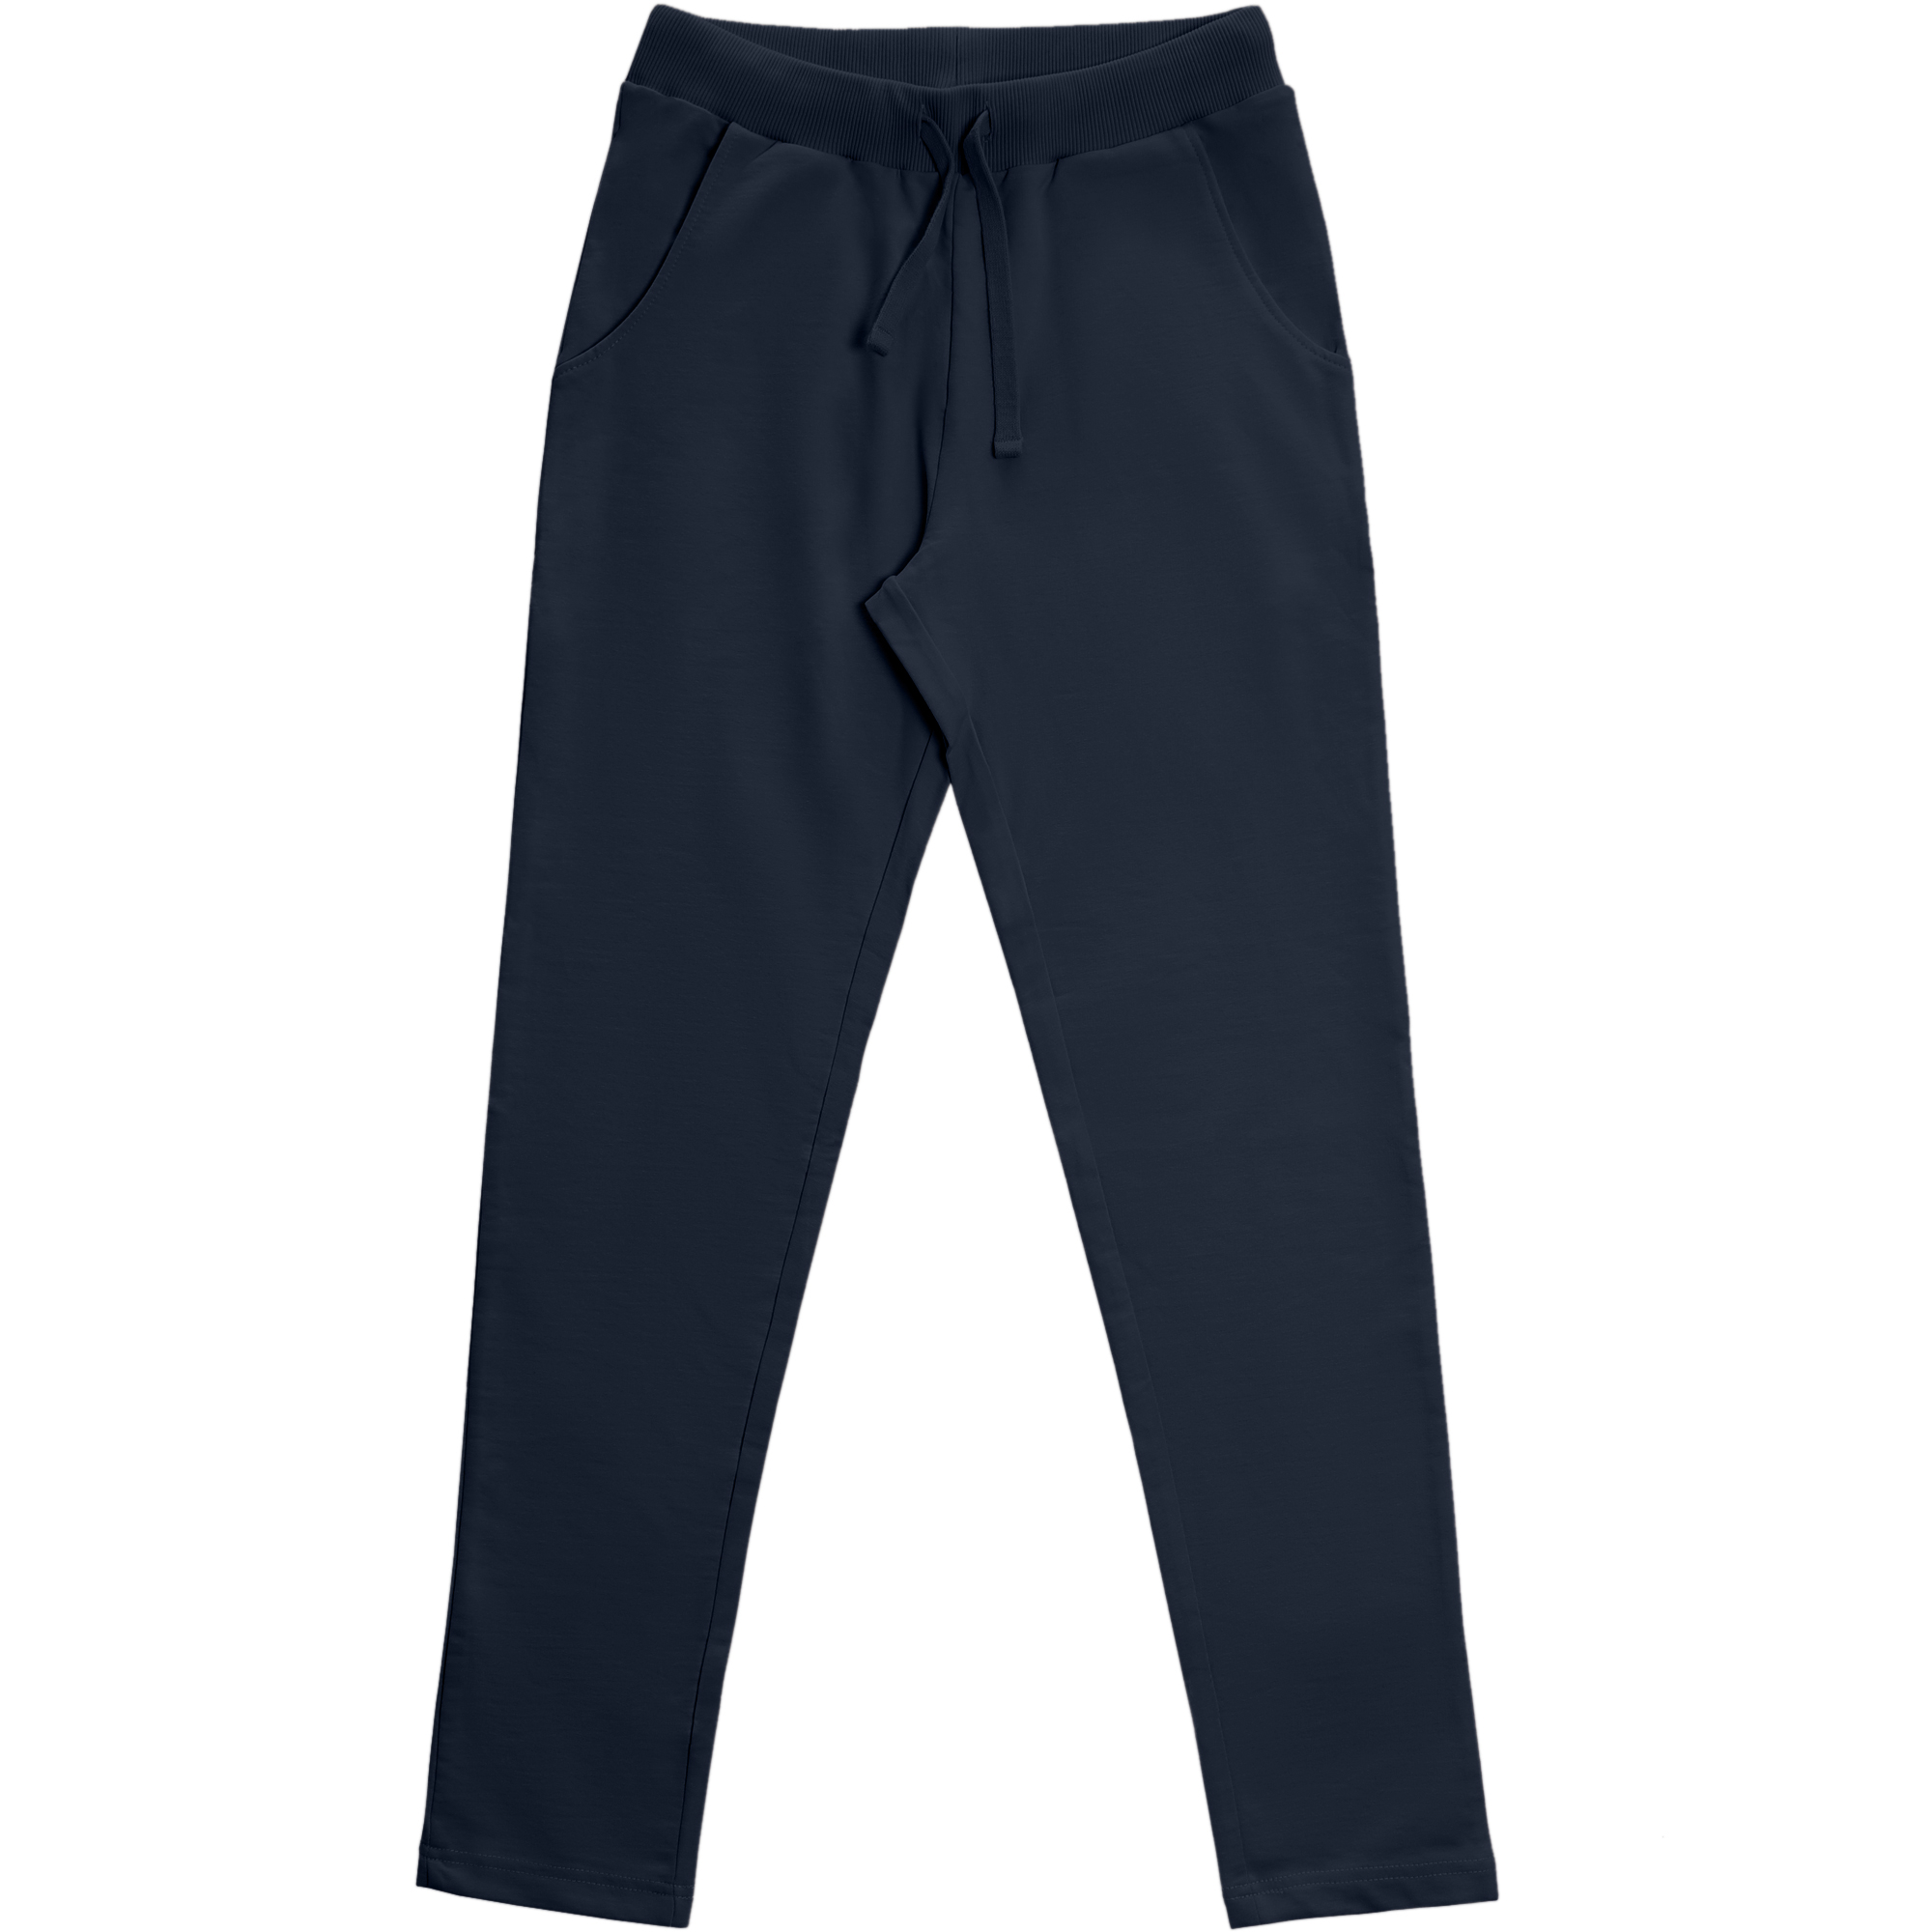 Женские брюки Birlik тёмно-синие, цвет тёмно-синий, размер S - фото 1